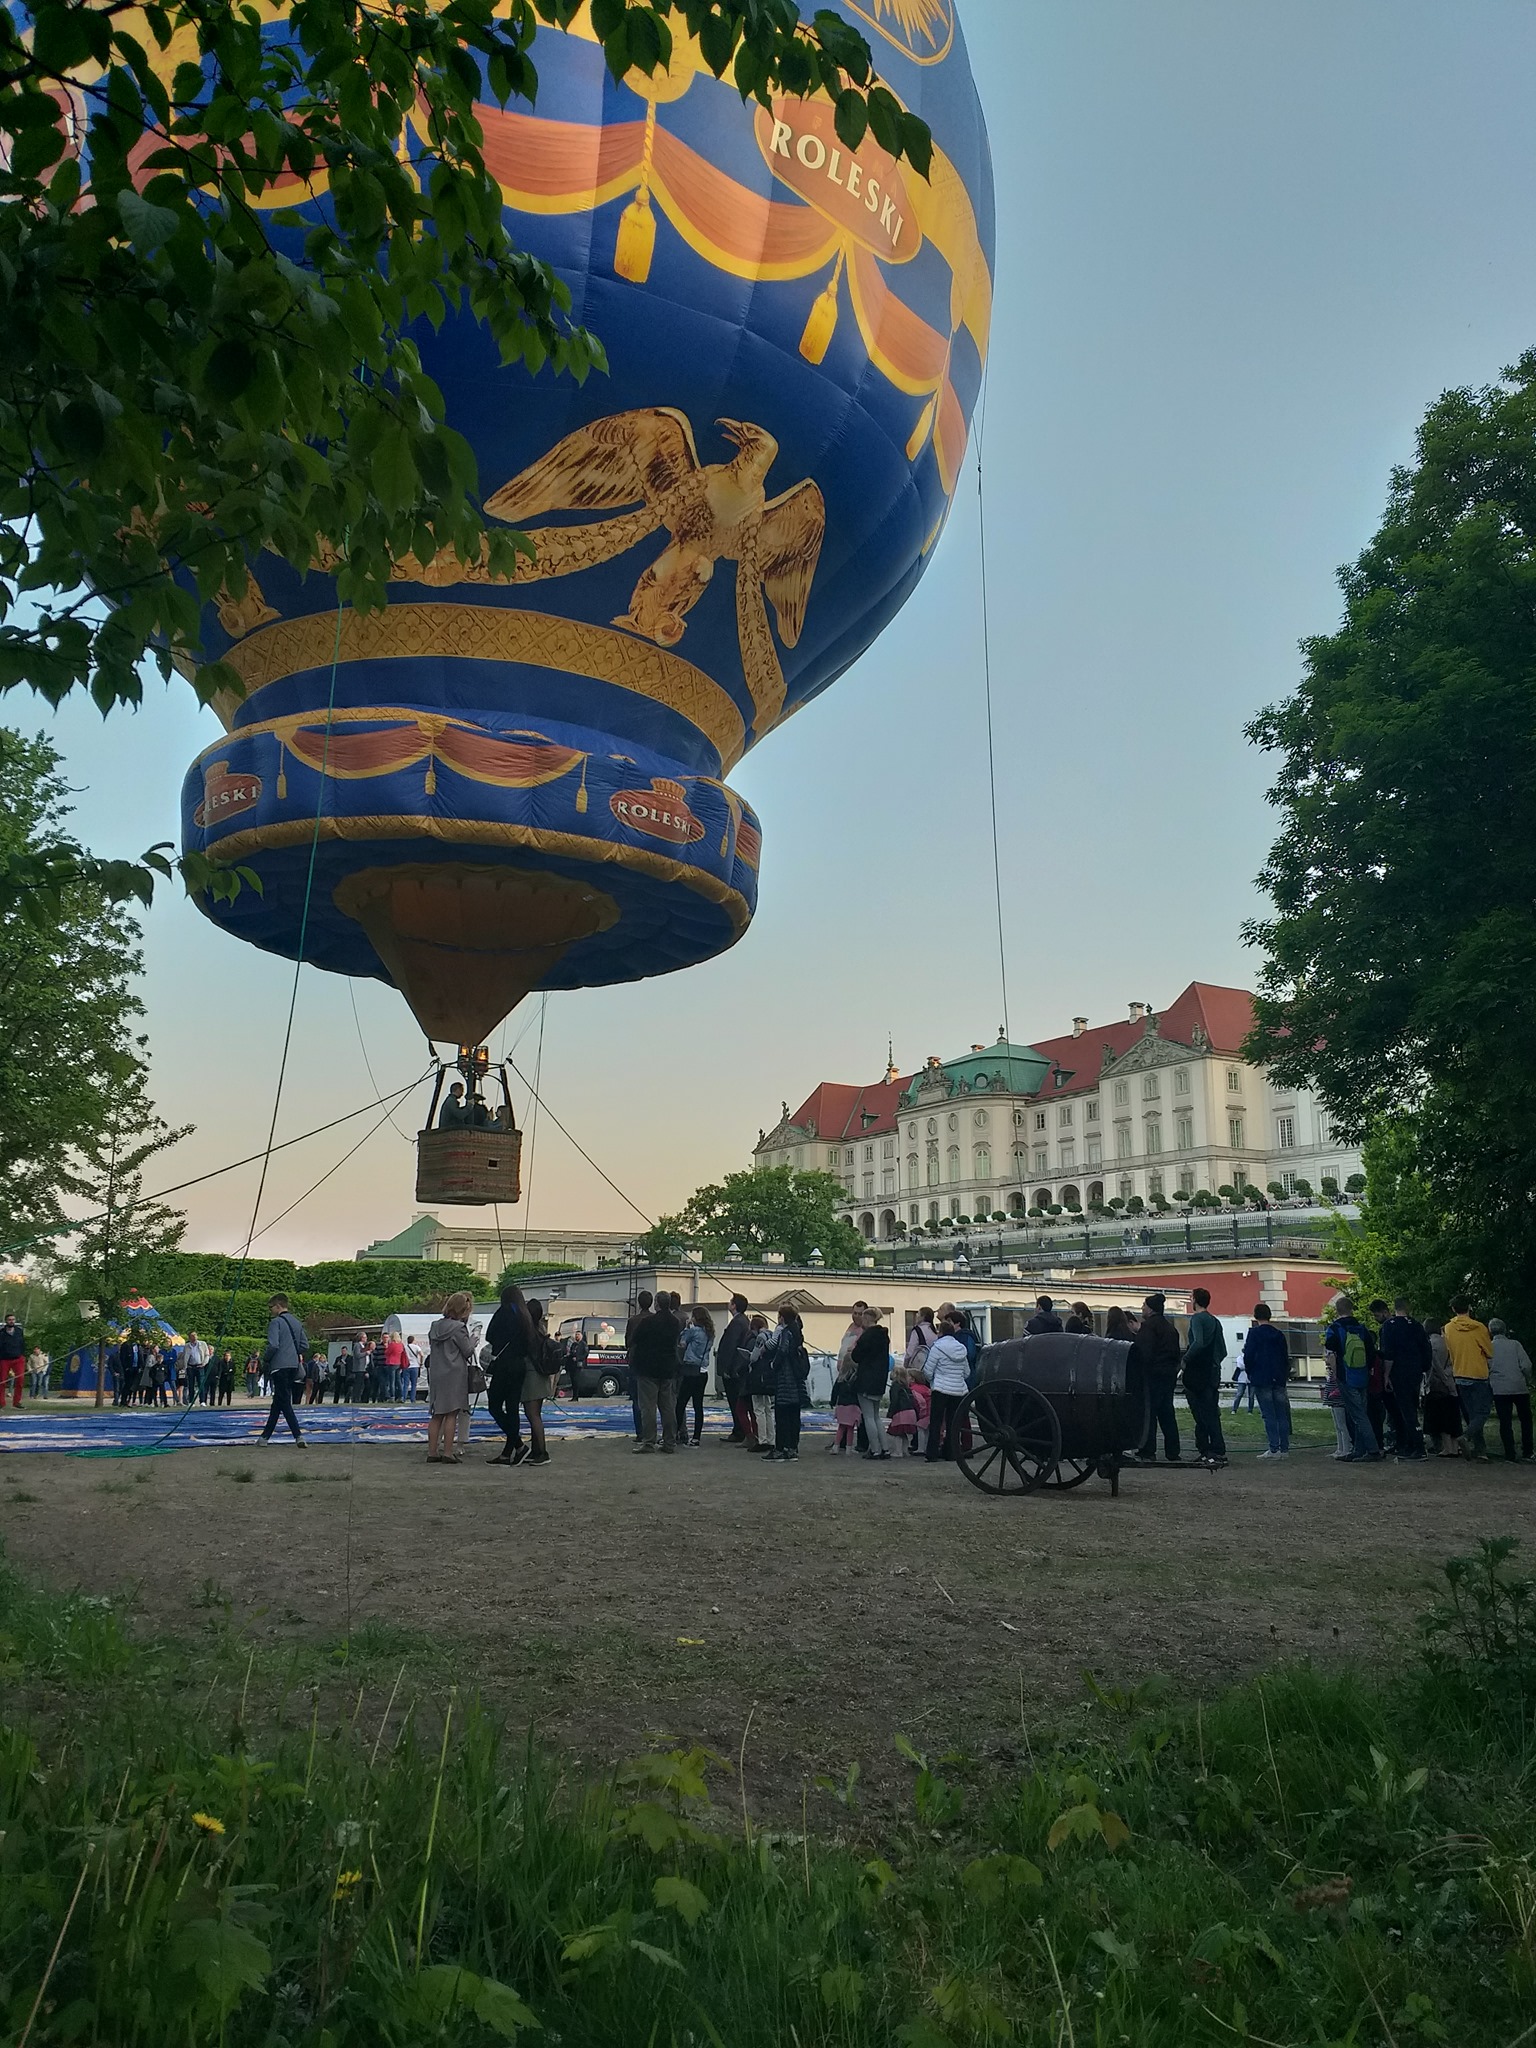 zdjęcie startującego balonu